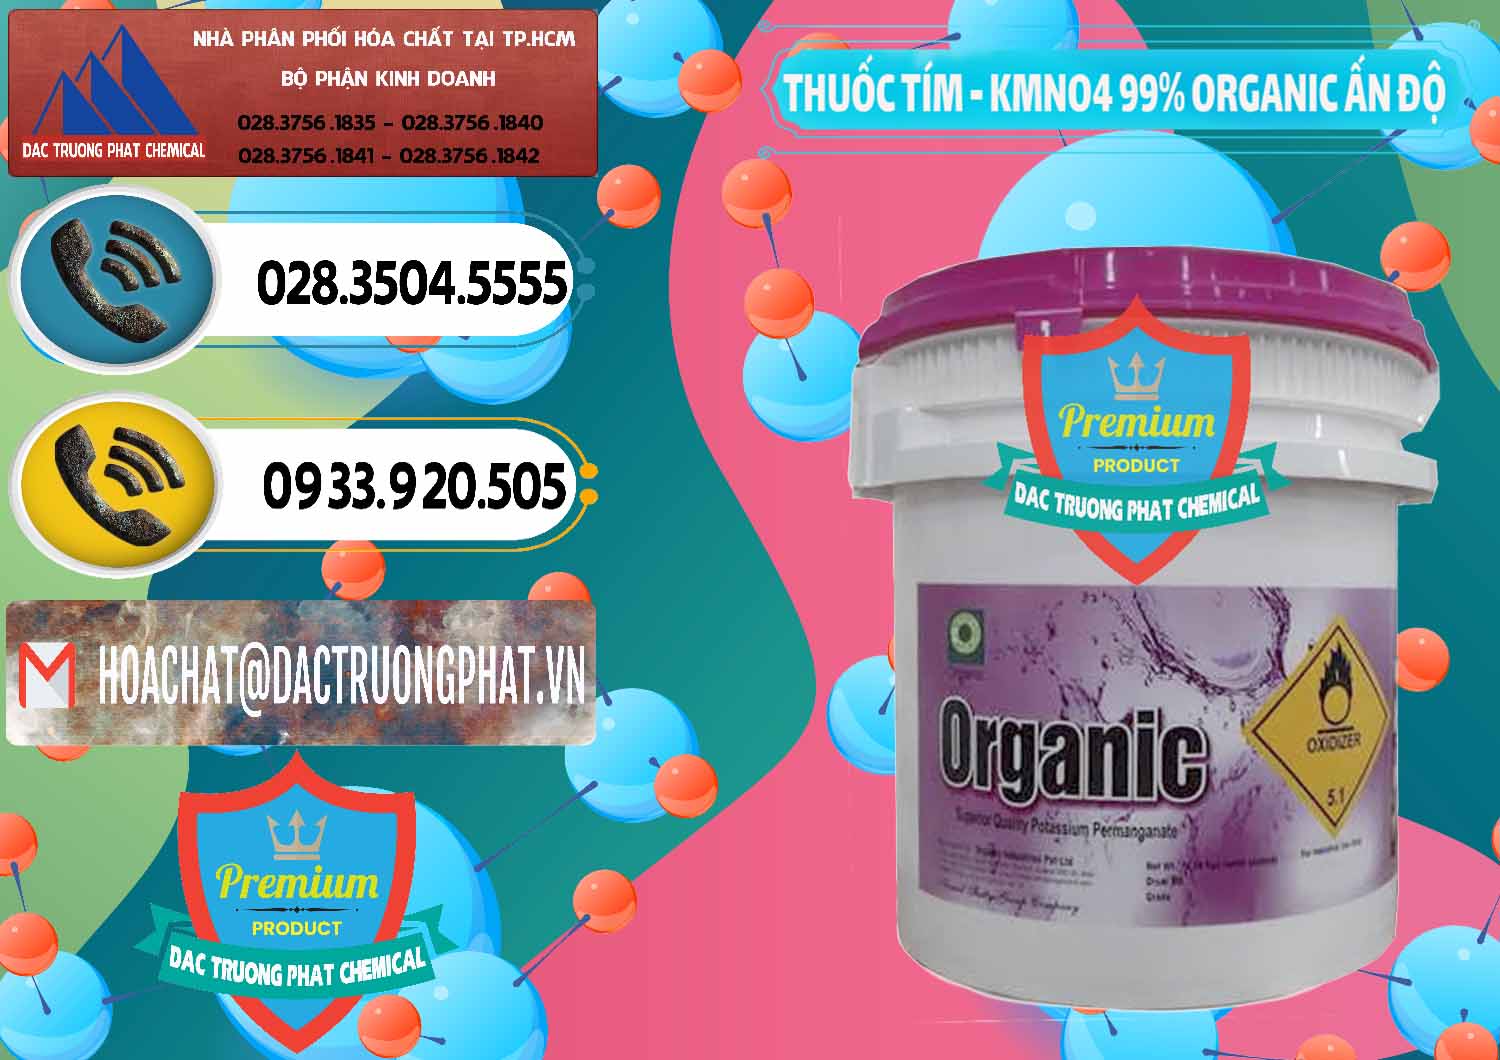 Nơi bán - cung cấp Thuốc Tím - KMNO4 99% Organic Ấn Độ India - 0216 - Đơn vị chuyên cung cấp _ nhập khẩu hóa chất tại TP.HCM - hoachatdetnhuom.vn